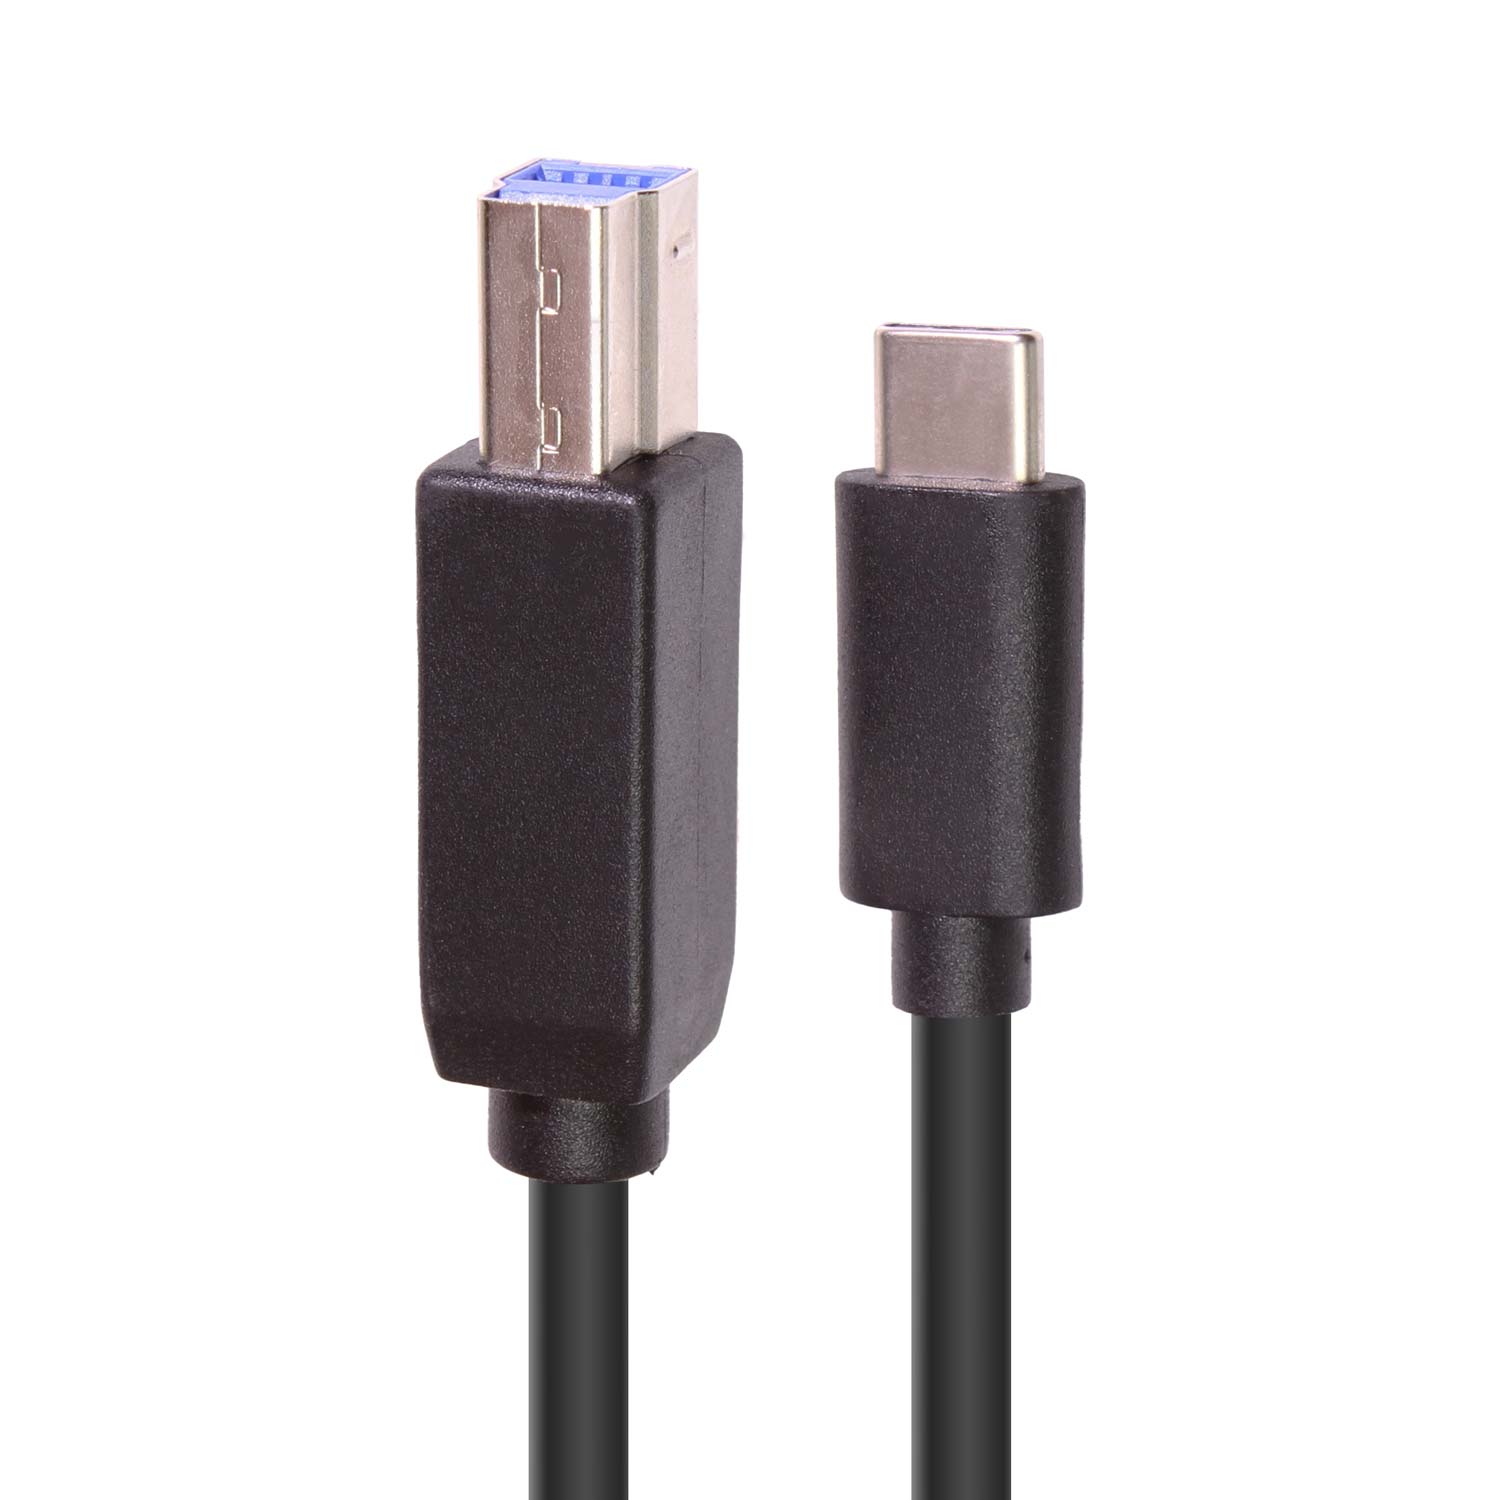 C2G 3ft USB 3.1 Gen 1 USB Type C to USB B Cable M/M - USB C Cable Black -  USB-C cable - USB Type B to USB-C - 3 ft